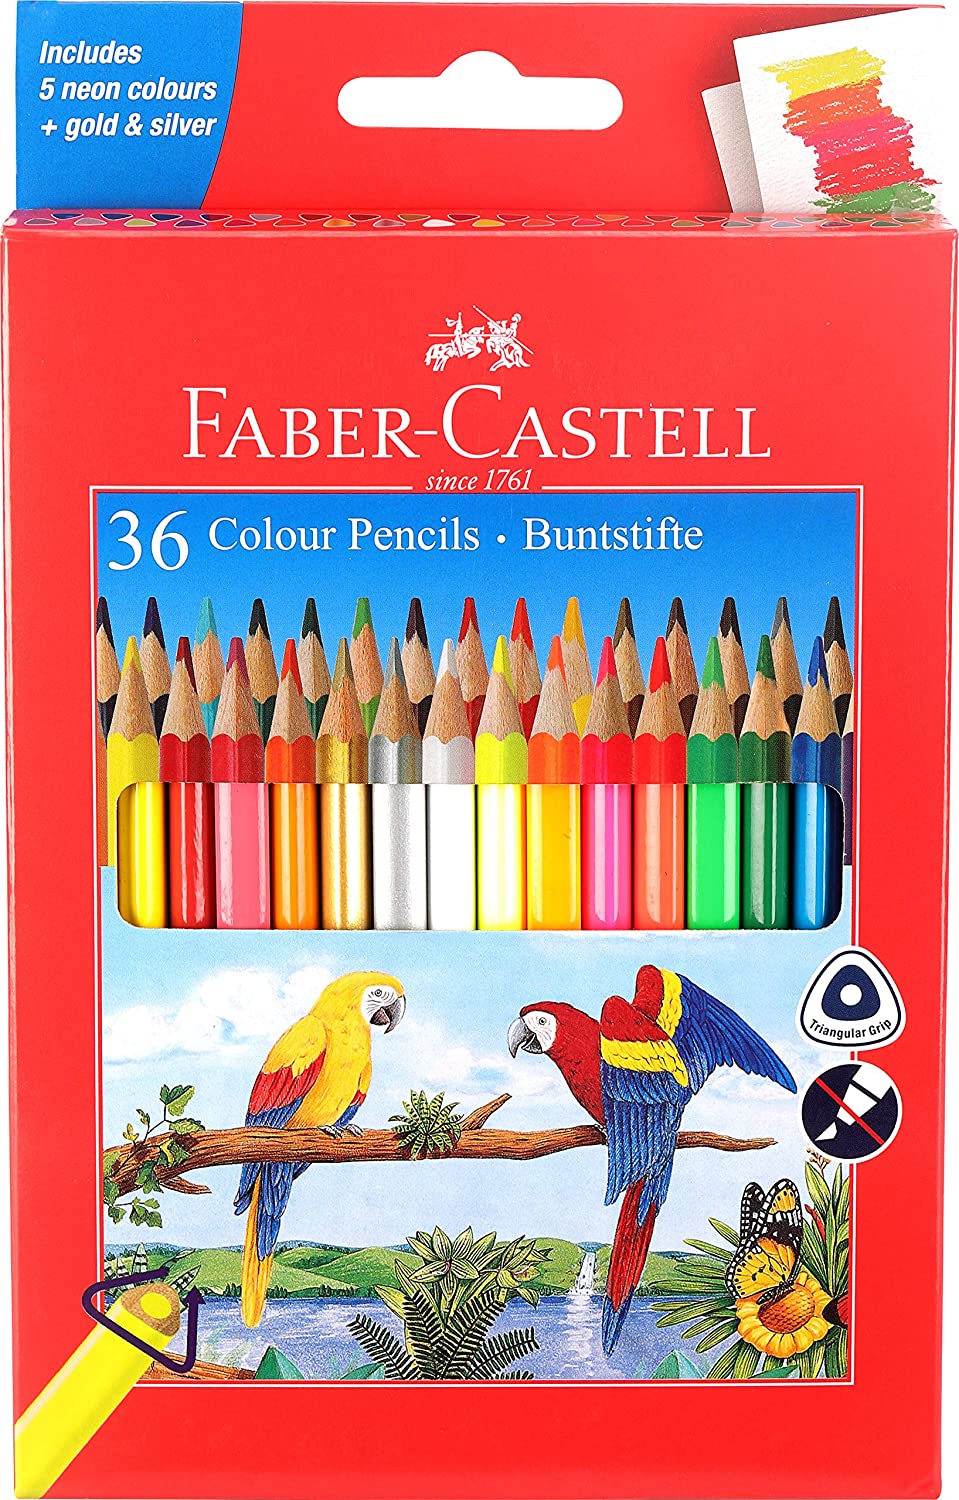 Faber-Castell 36 Triangular Colour Pencils